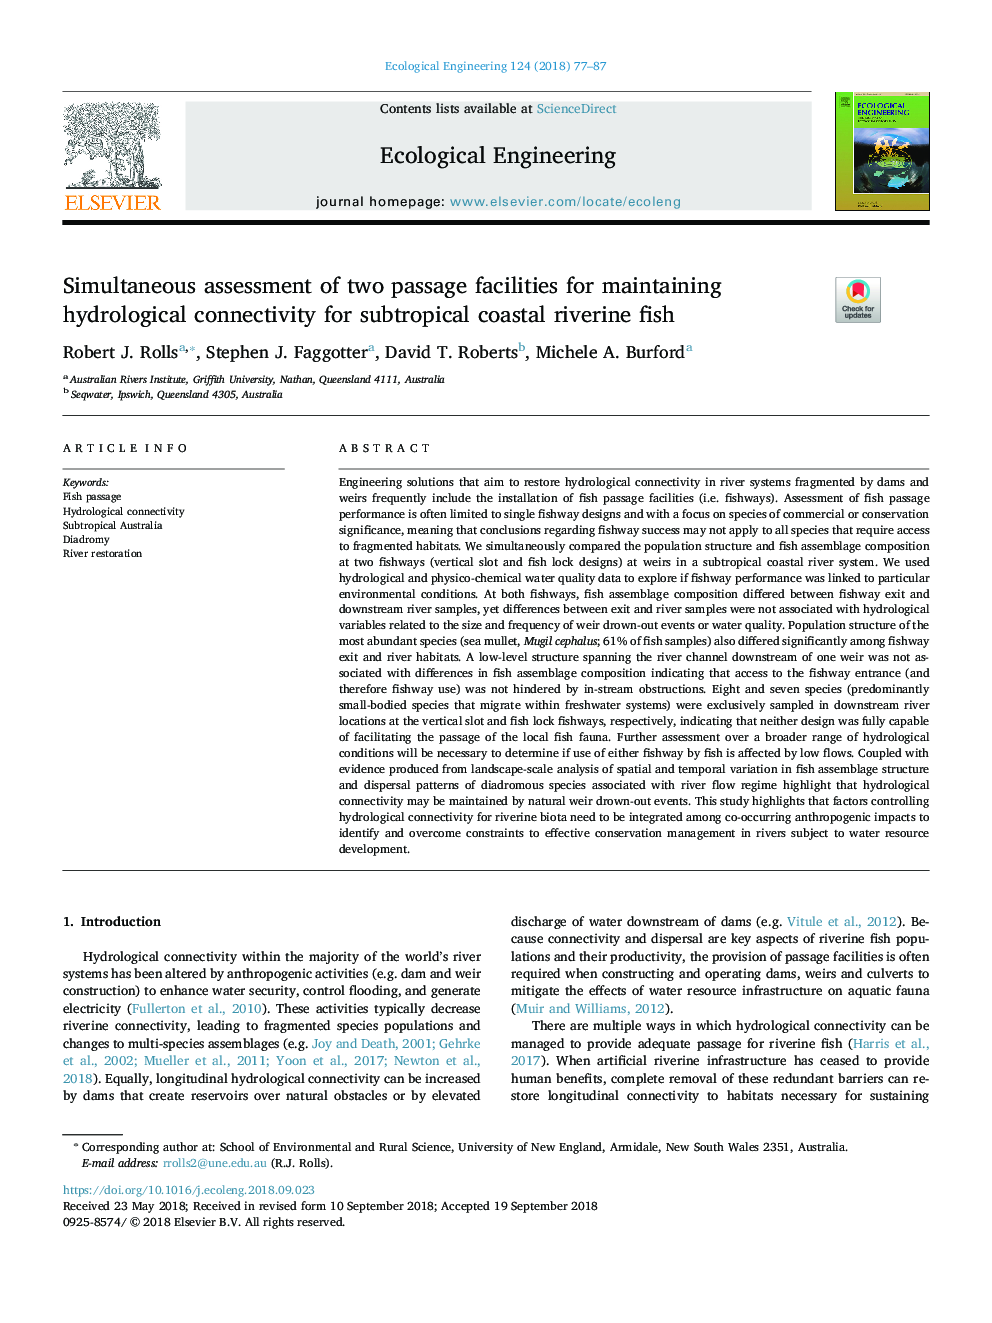 ارزیابی همزمان دو امکانات عبور برای حفظ اتصال هیدرولوژیکی برای ماهی های ساحلی ساحلی نیمه گرمسیری